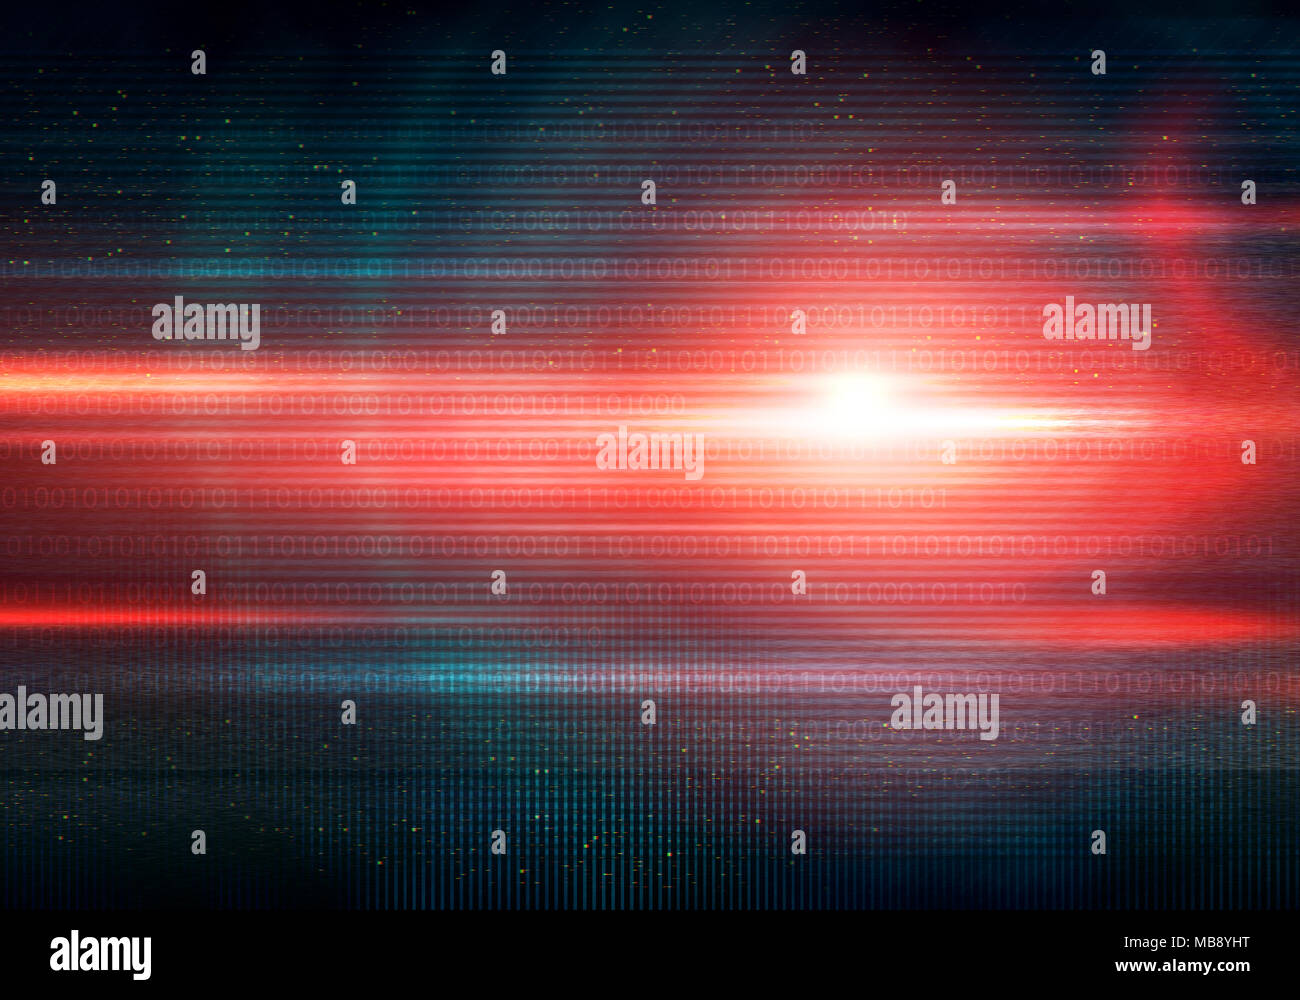 Ilustración de glitched abstracta señal de pantalla de error. Antecedentes conceptuales con código binario y grandes destellos de color rojo claro. Foto de stock